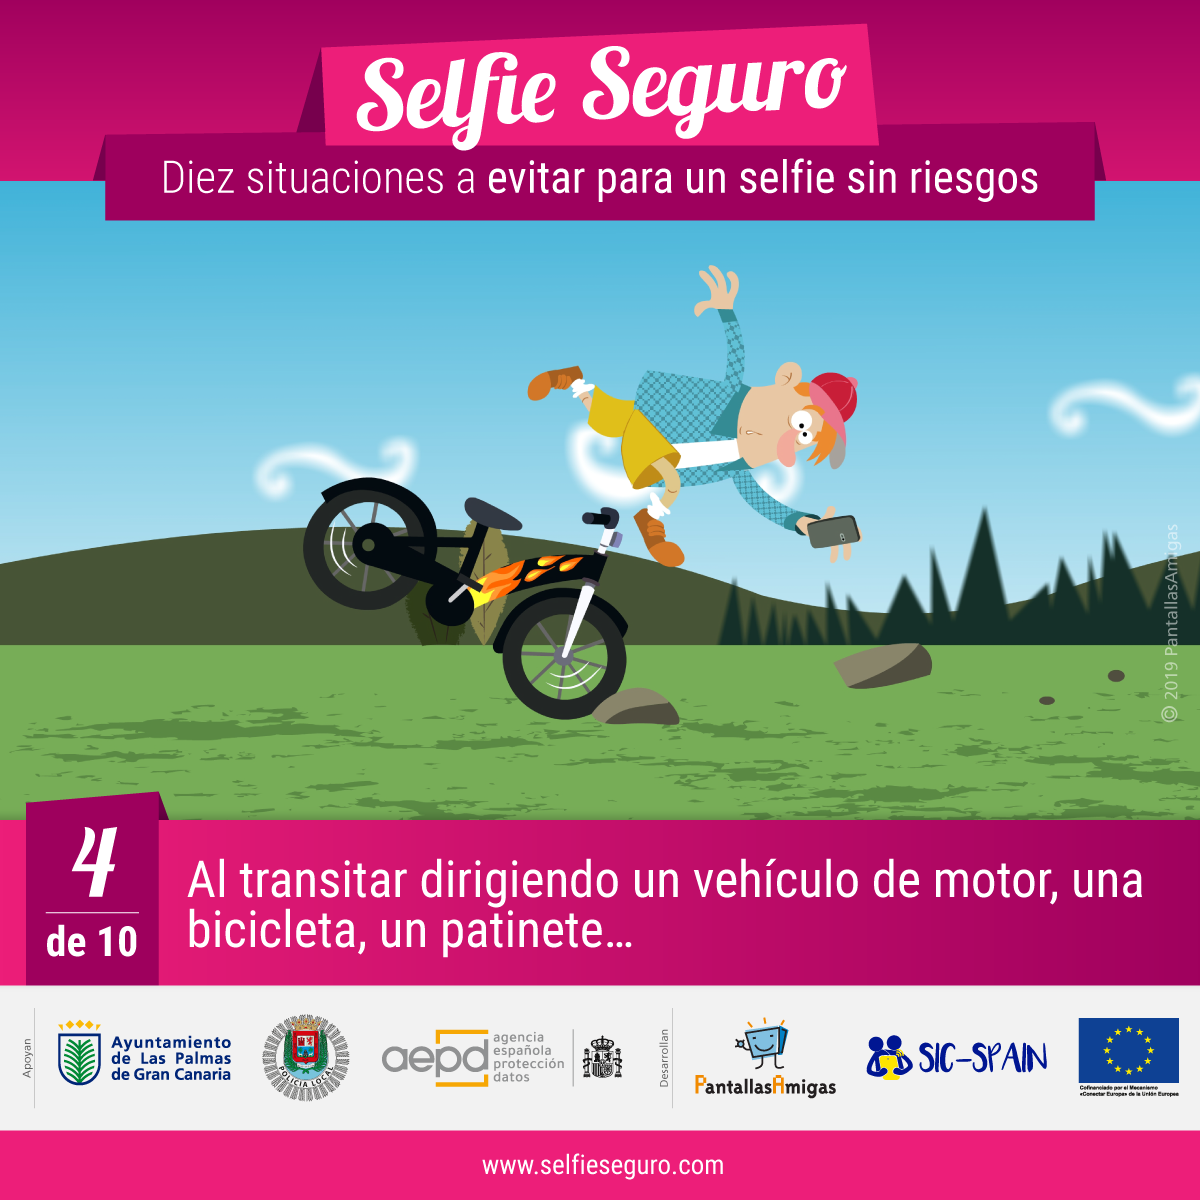 Evitar selfies al transitar dirigiendo un vehículo de motor, una bicicleta, un patinete…